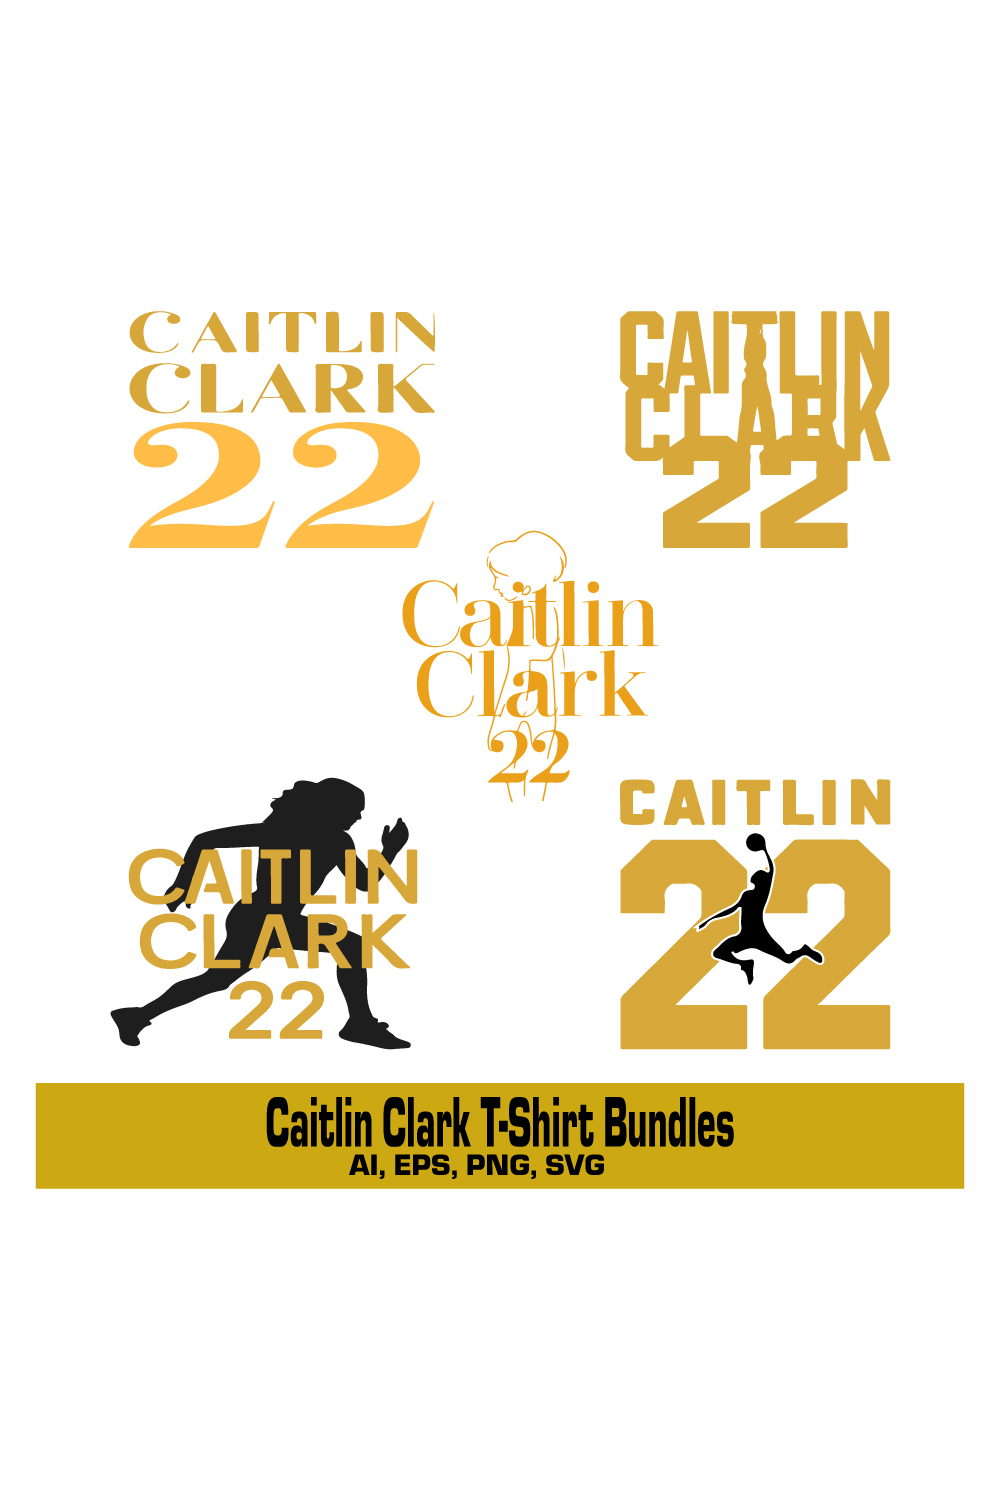 caitlin clark t-shirt Design Bundles pinterest preview image.